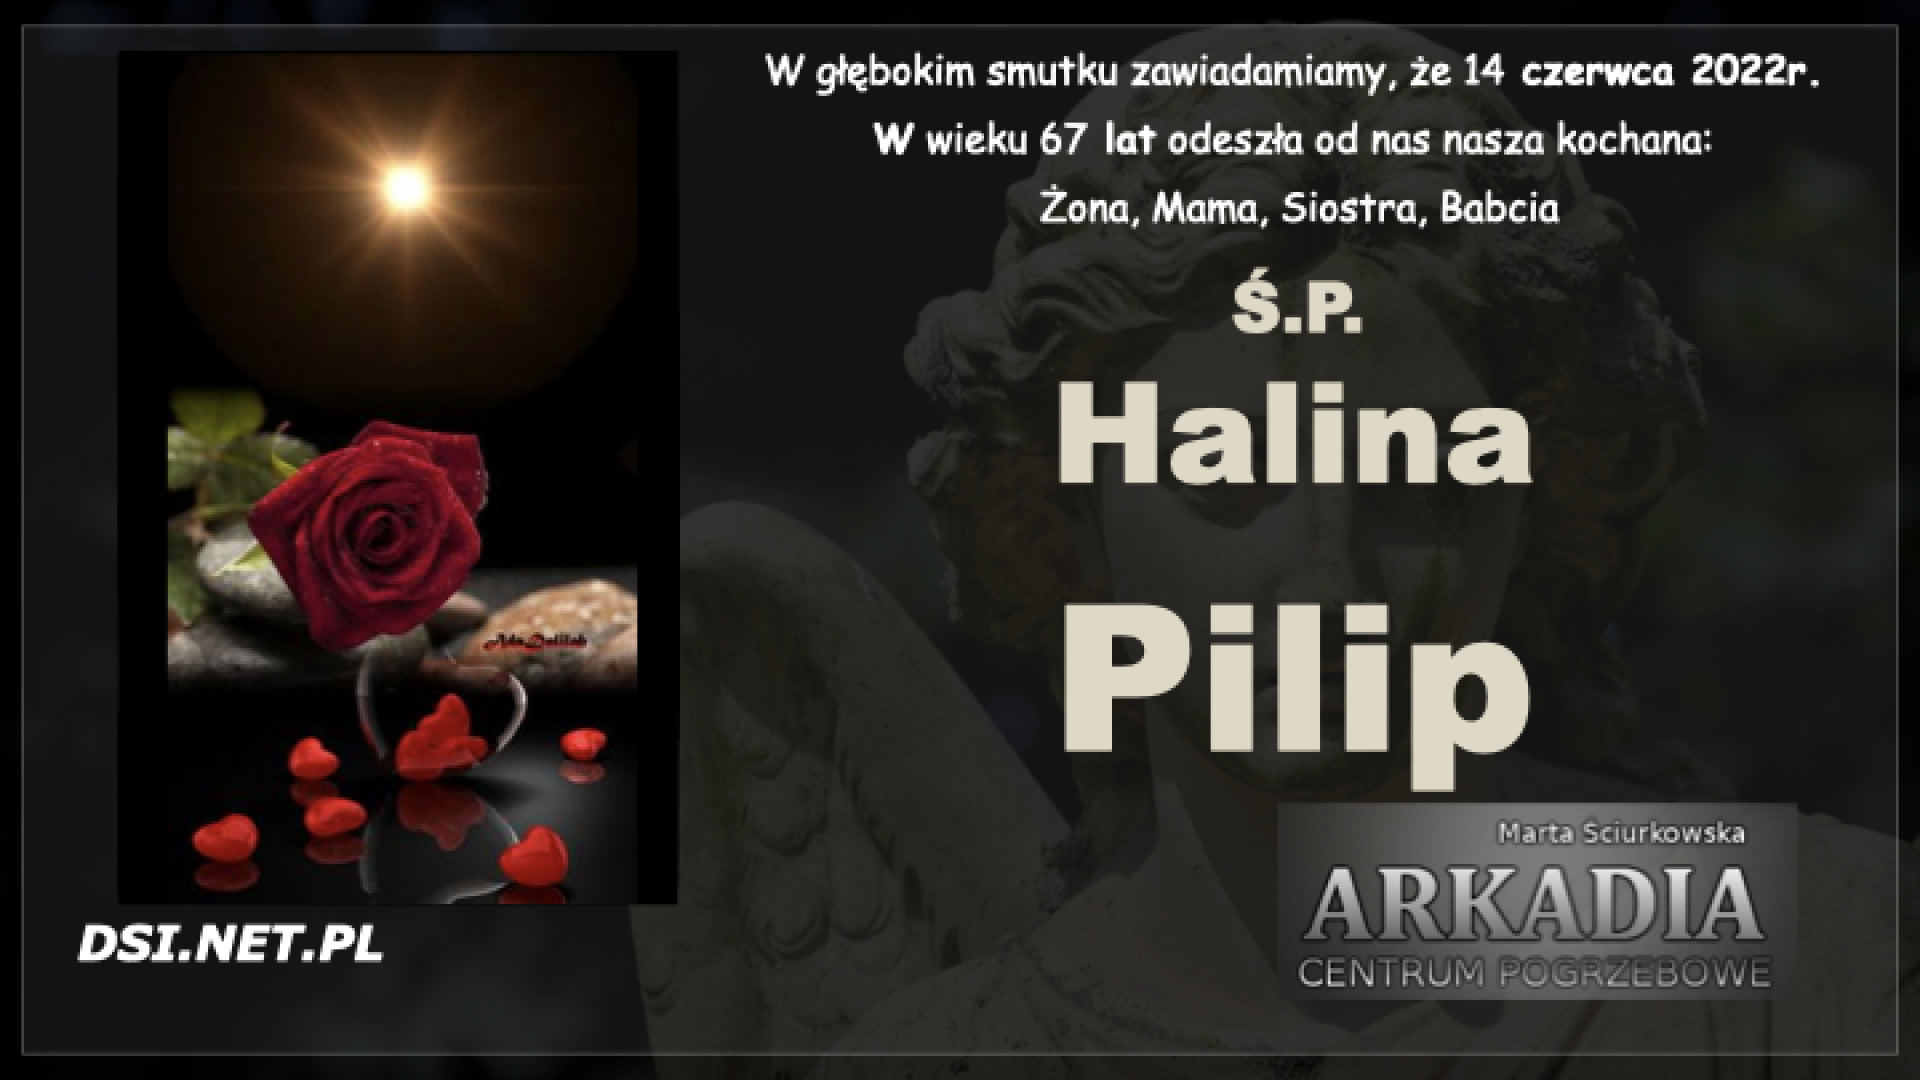 Ś.P. Halina Pilip